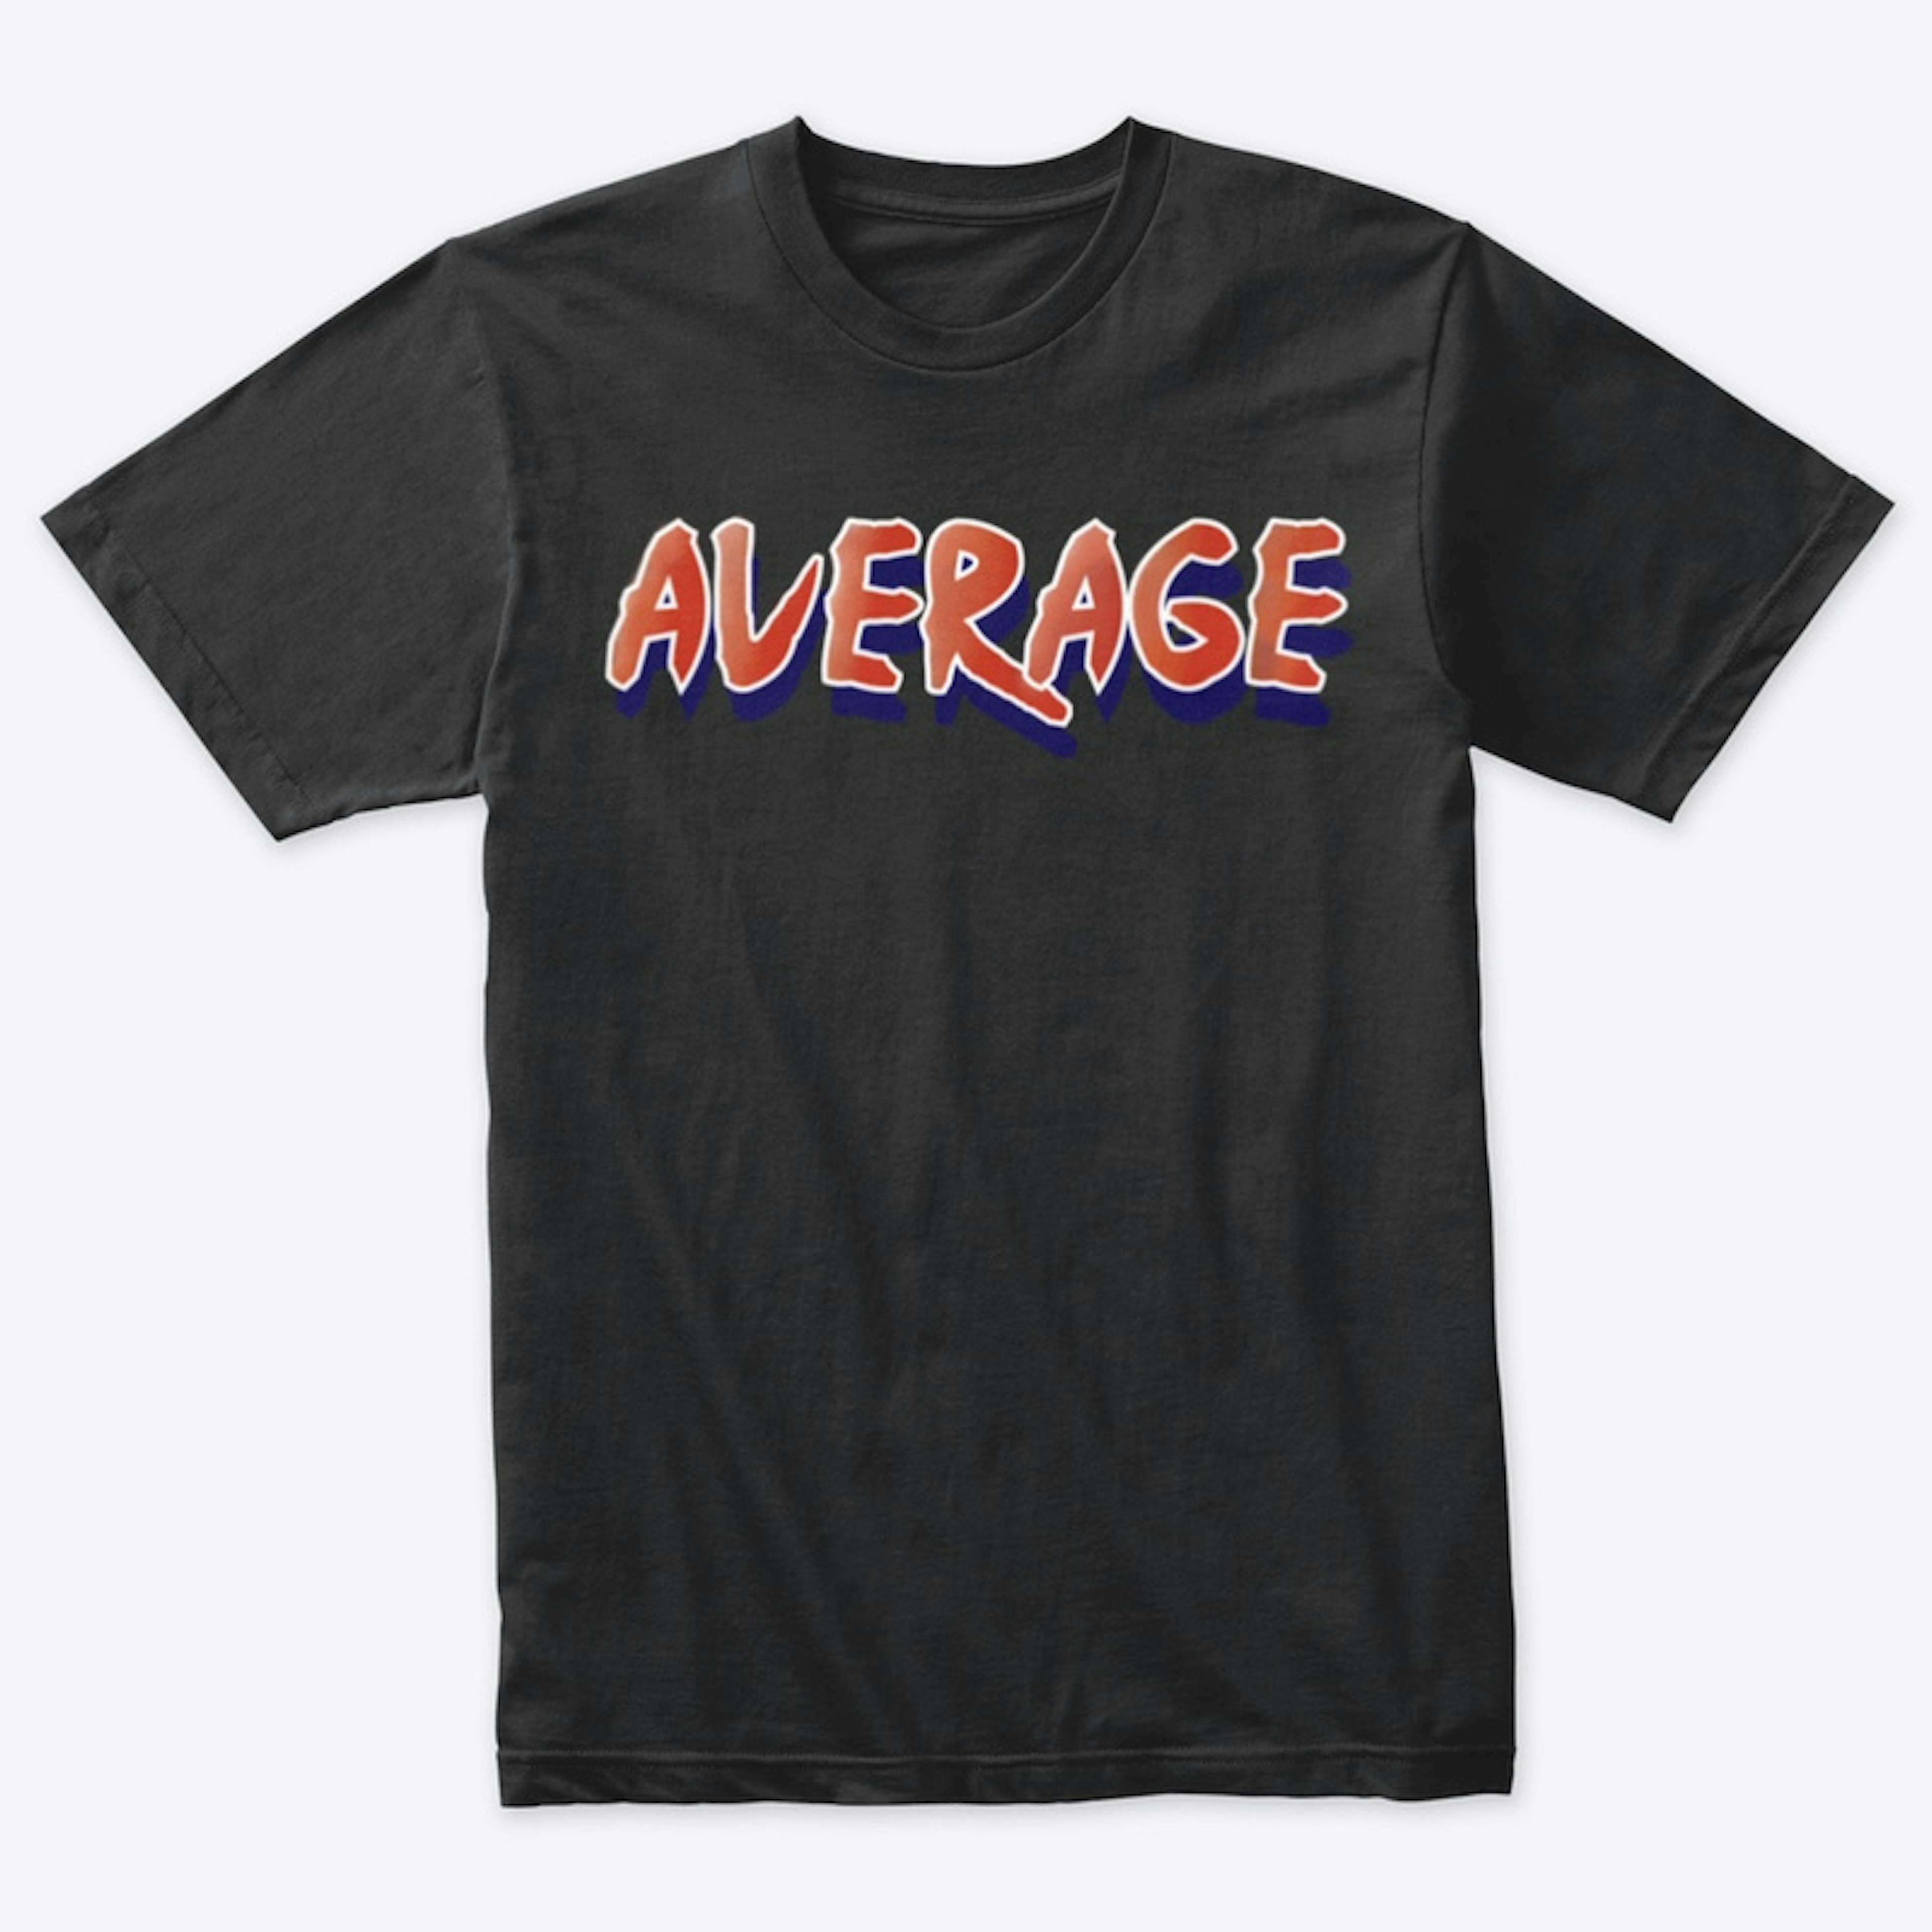 Average narugymwear